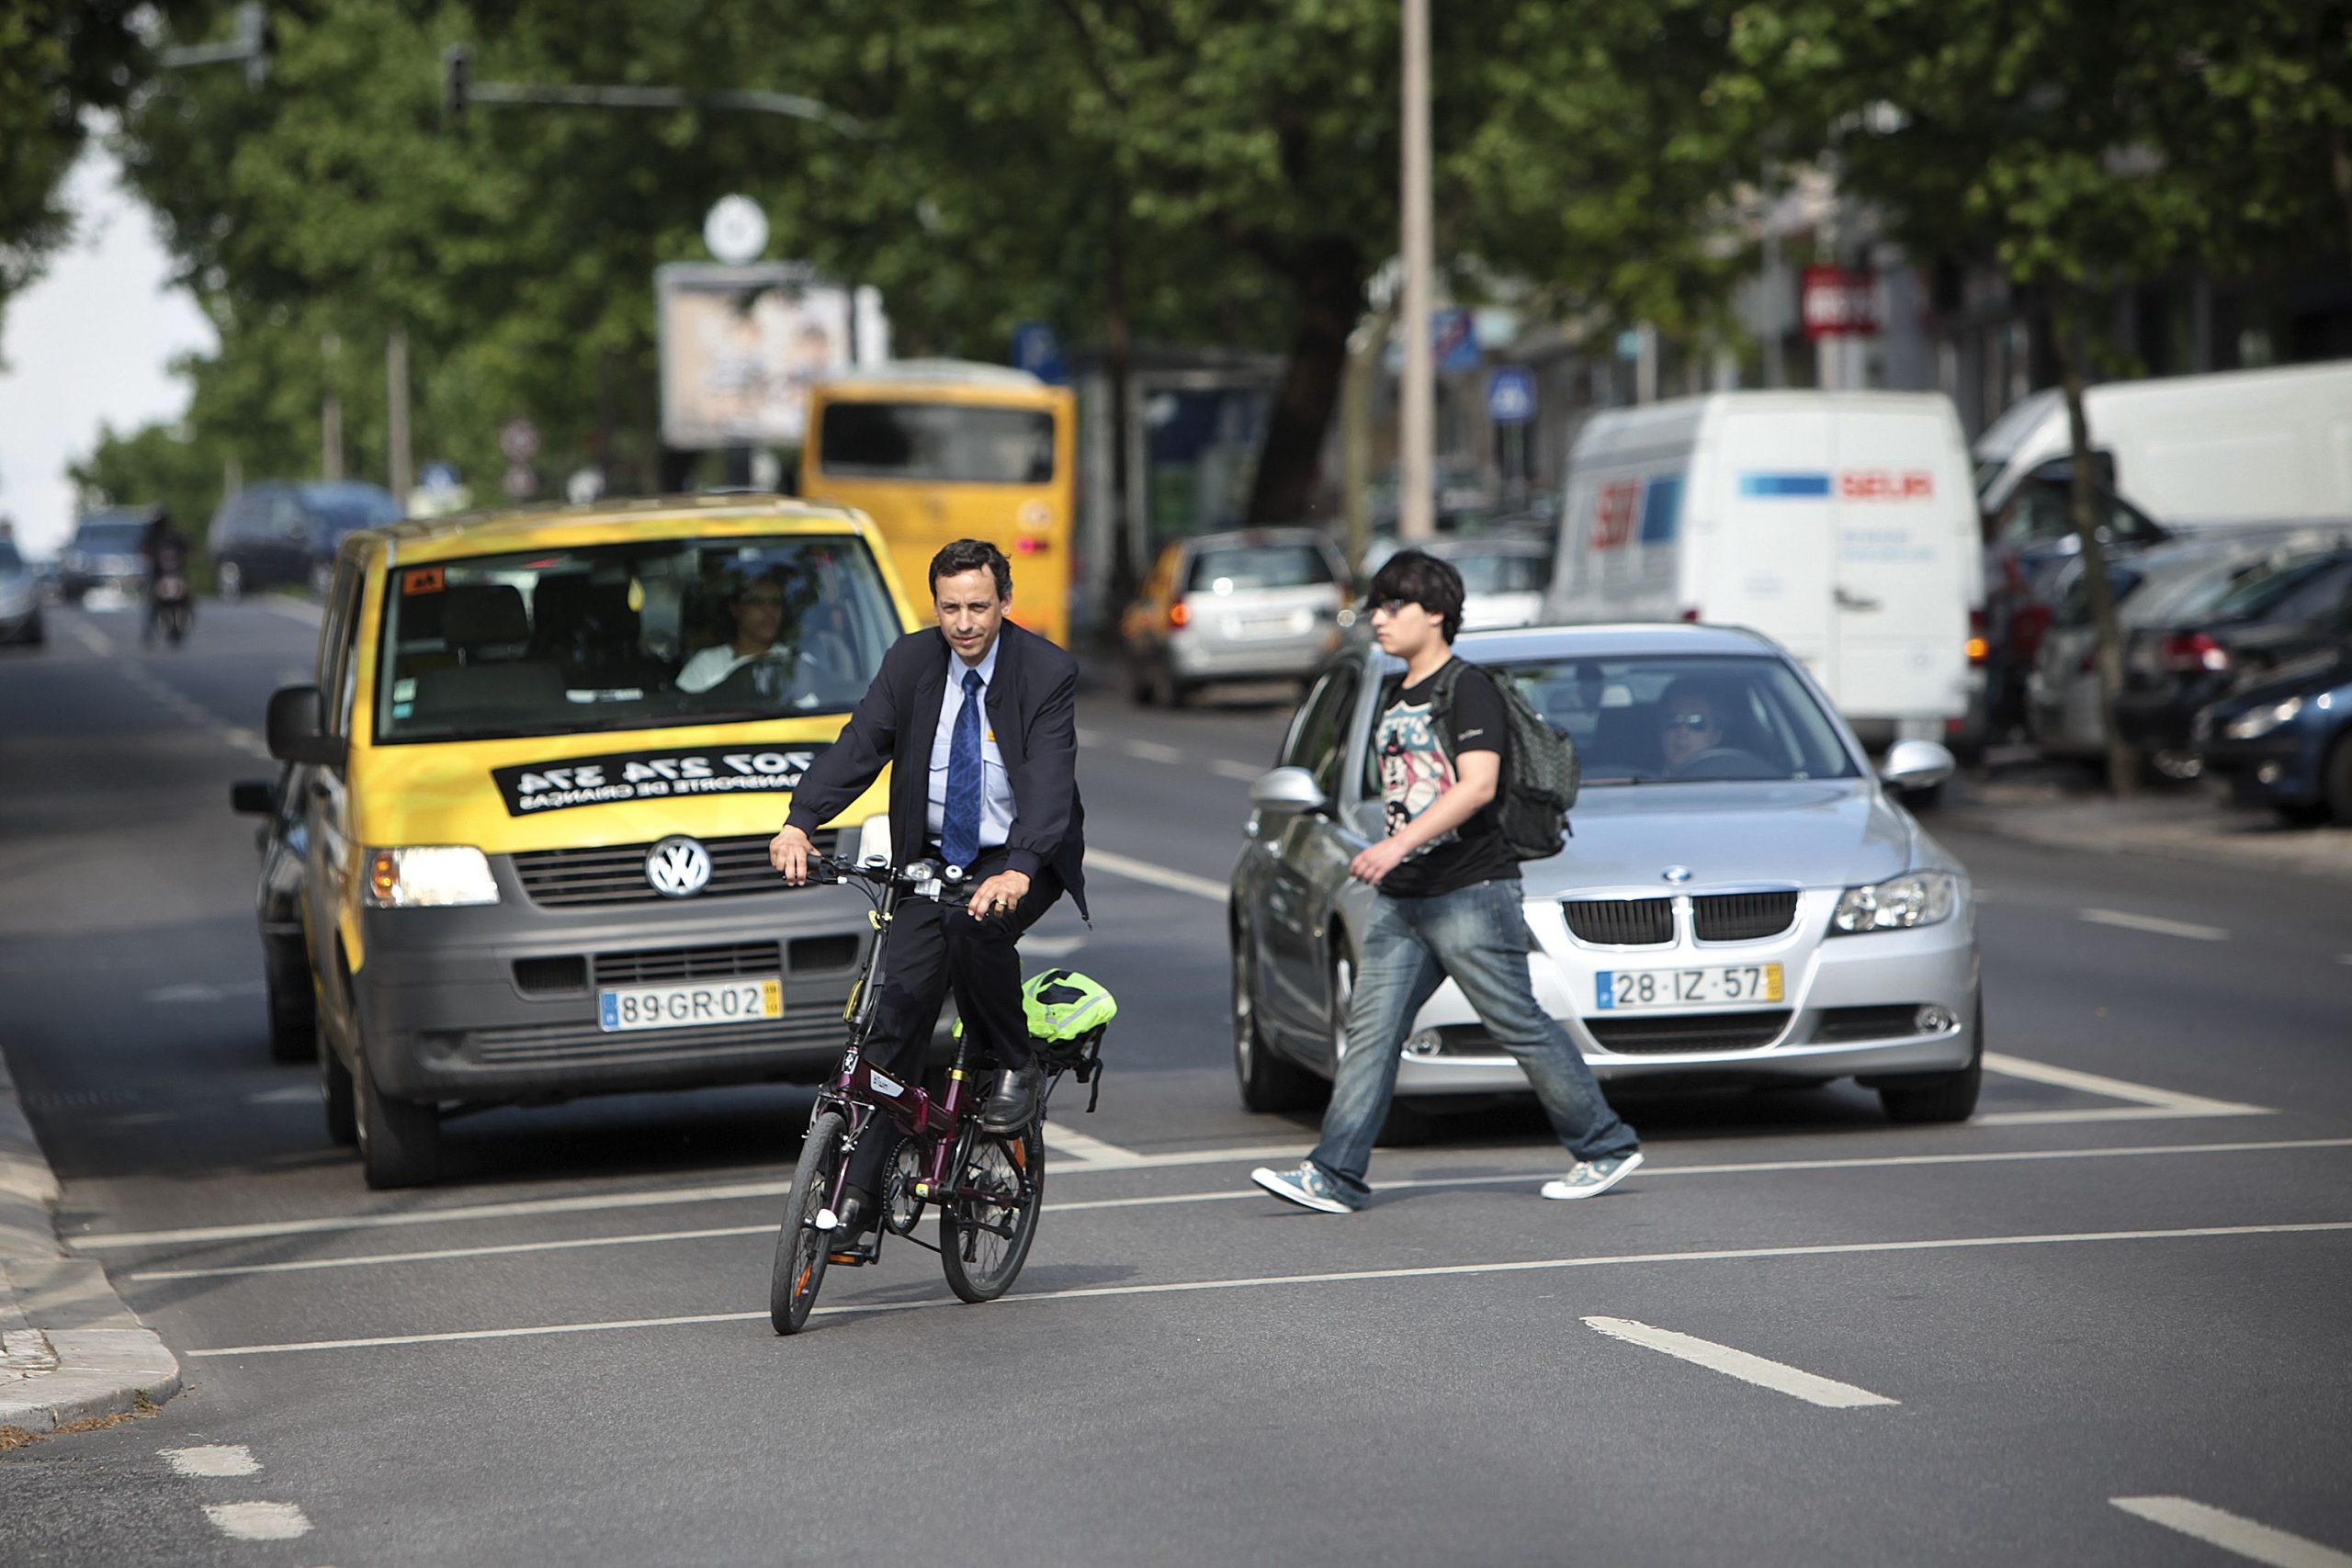 Acidentes com bicicletas aumentaram 18,4% em 2013